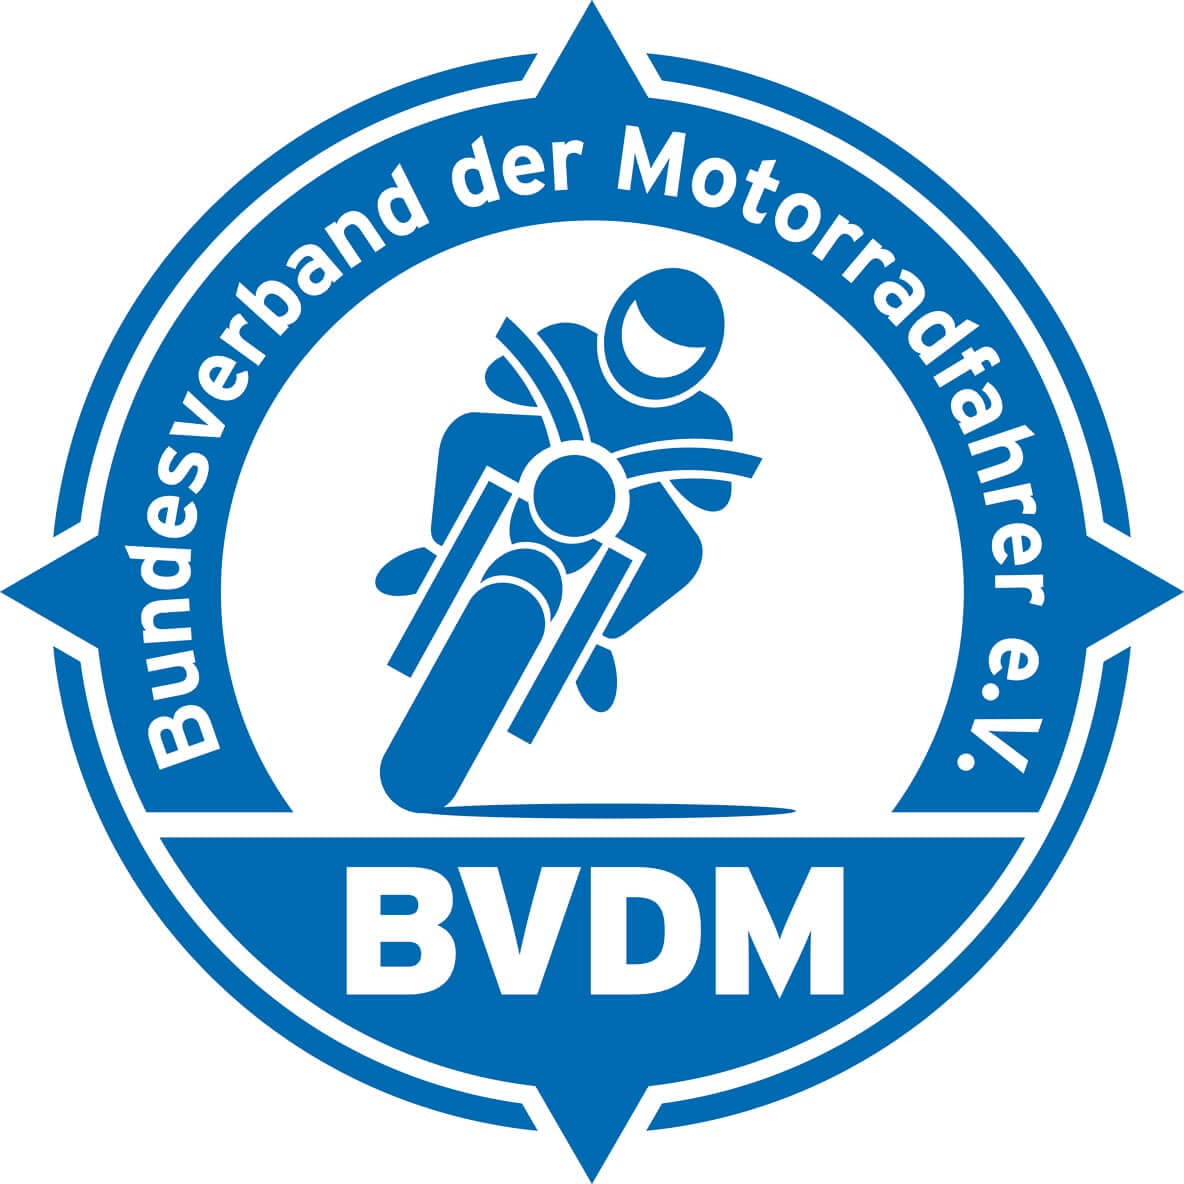 #BVDM legt Klage gegen #Streckensperrung erstmal auf Eis
- auch in der Motorrad Nachrichten App